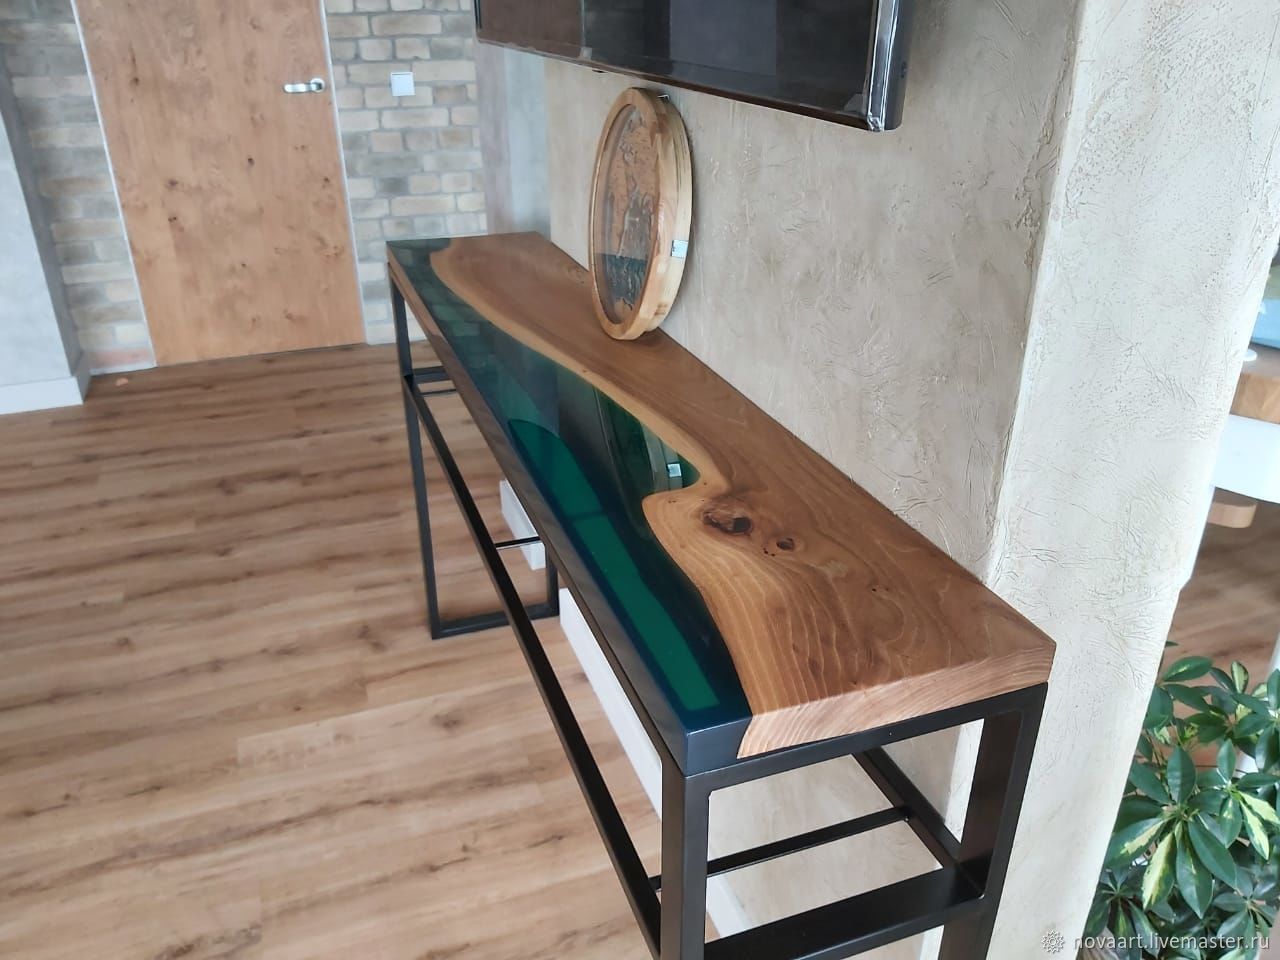 барные столы из дерева с эпоксидкой